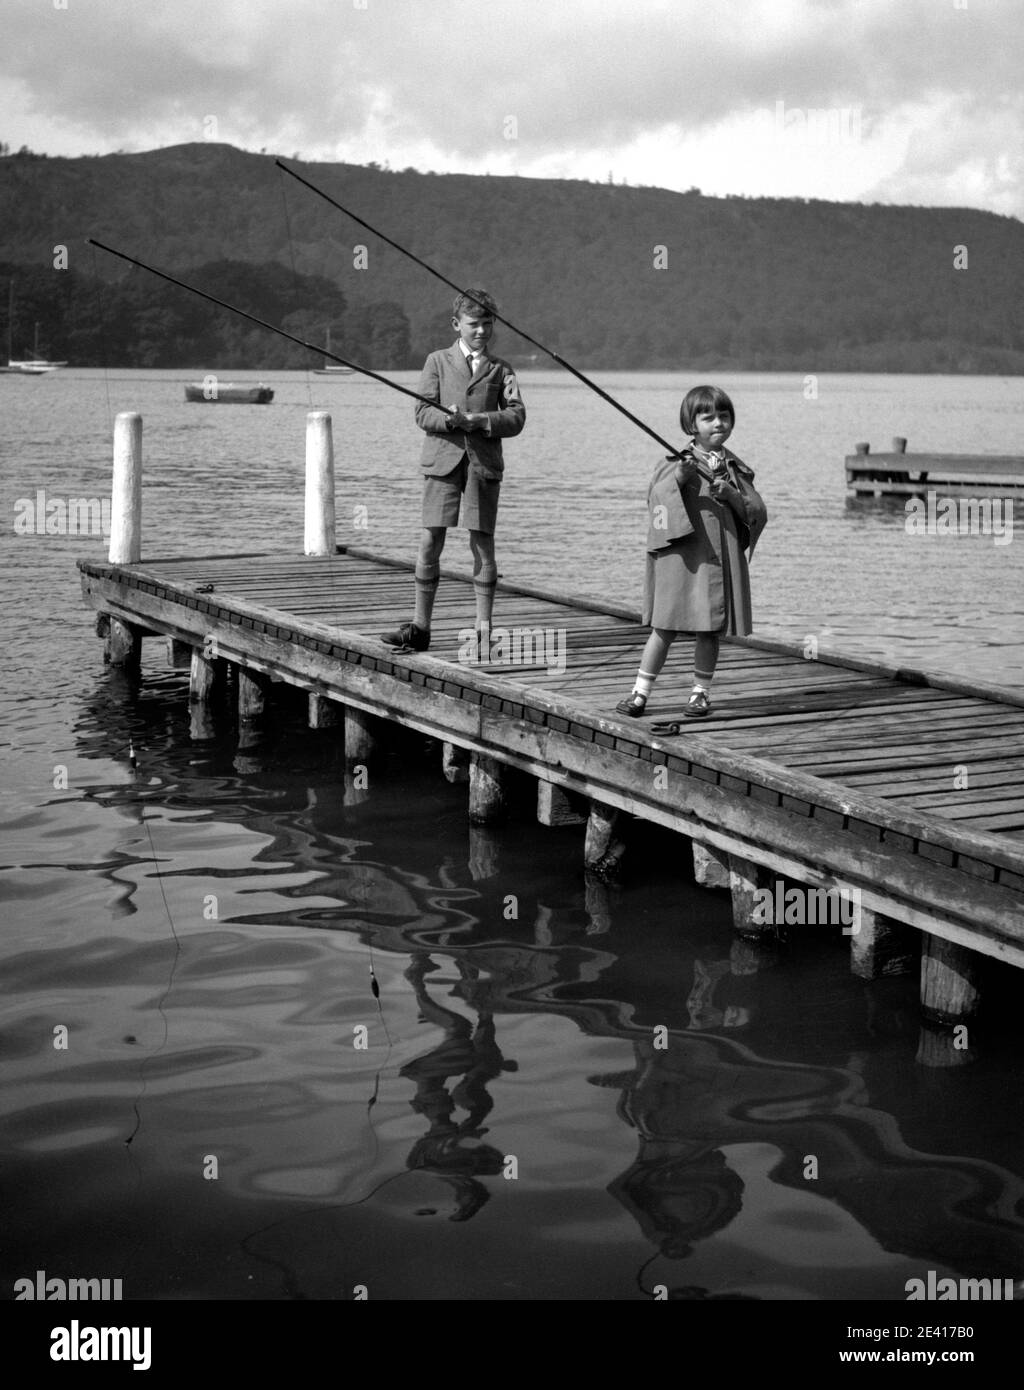 Ein Junge und ein Mädchen, möglicherweise Bruder und Schwester, fischen in einem See an einer Promenade, in den 1940er oder 1950er Jahren Stockfoto